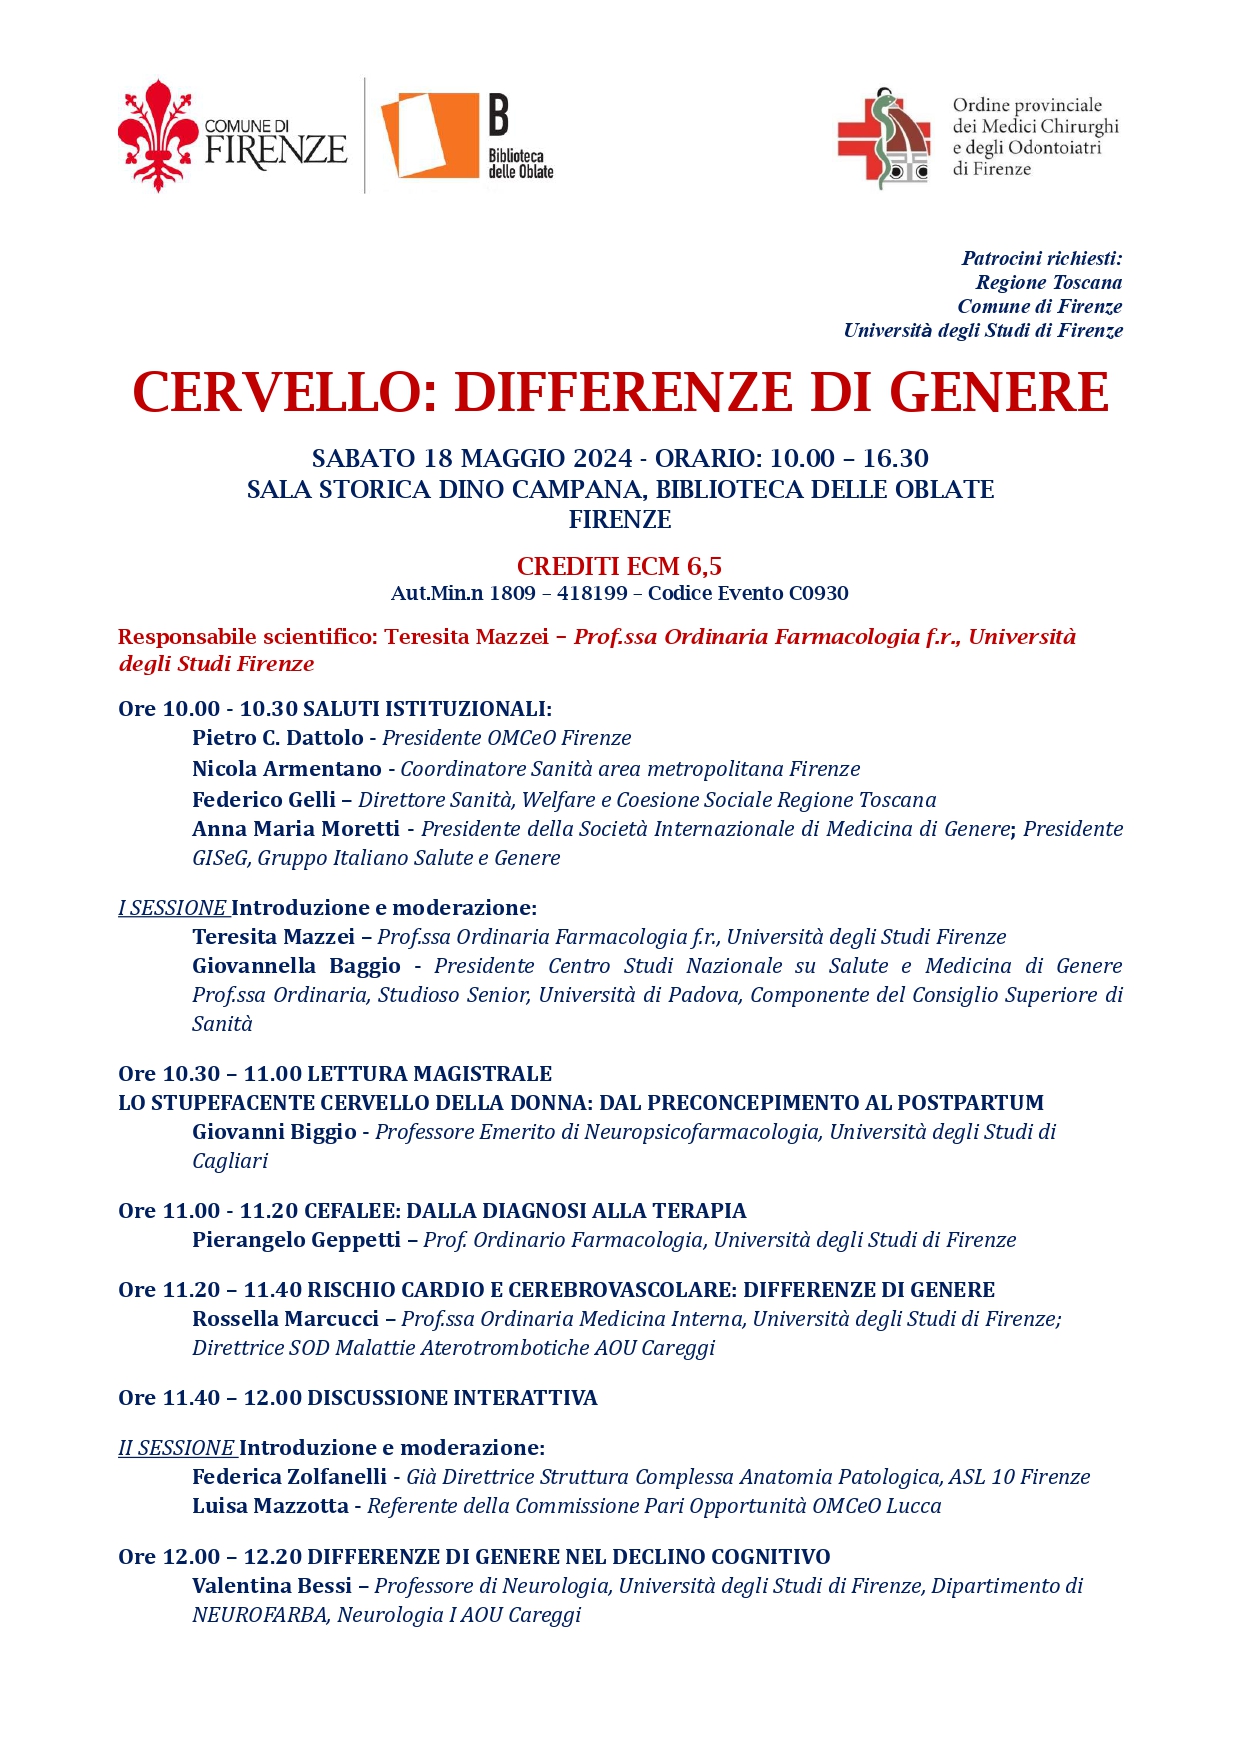 CERVELLO DIFFERENZE DI GENERE page 0001